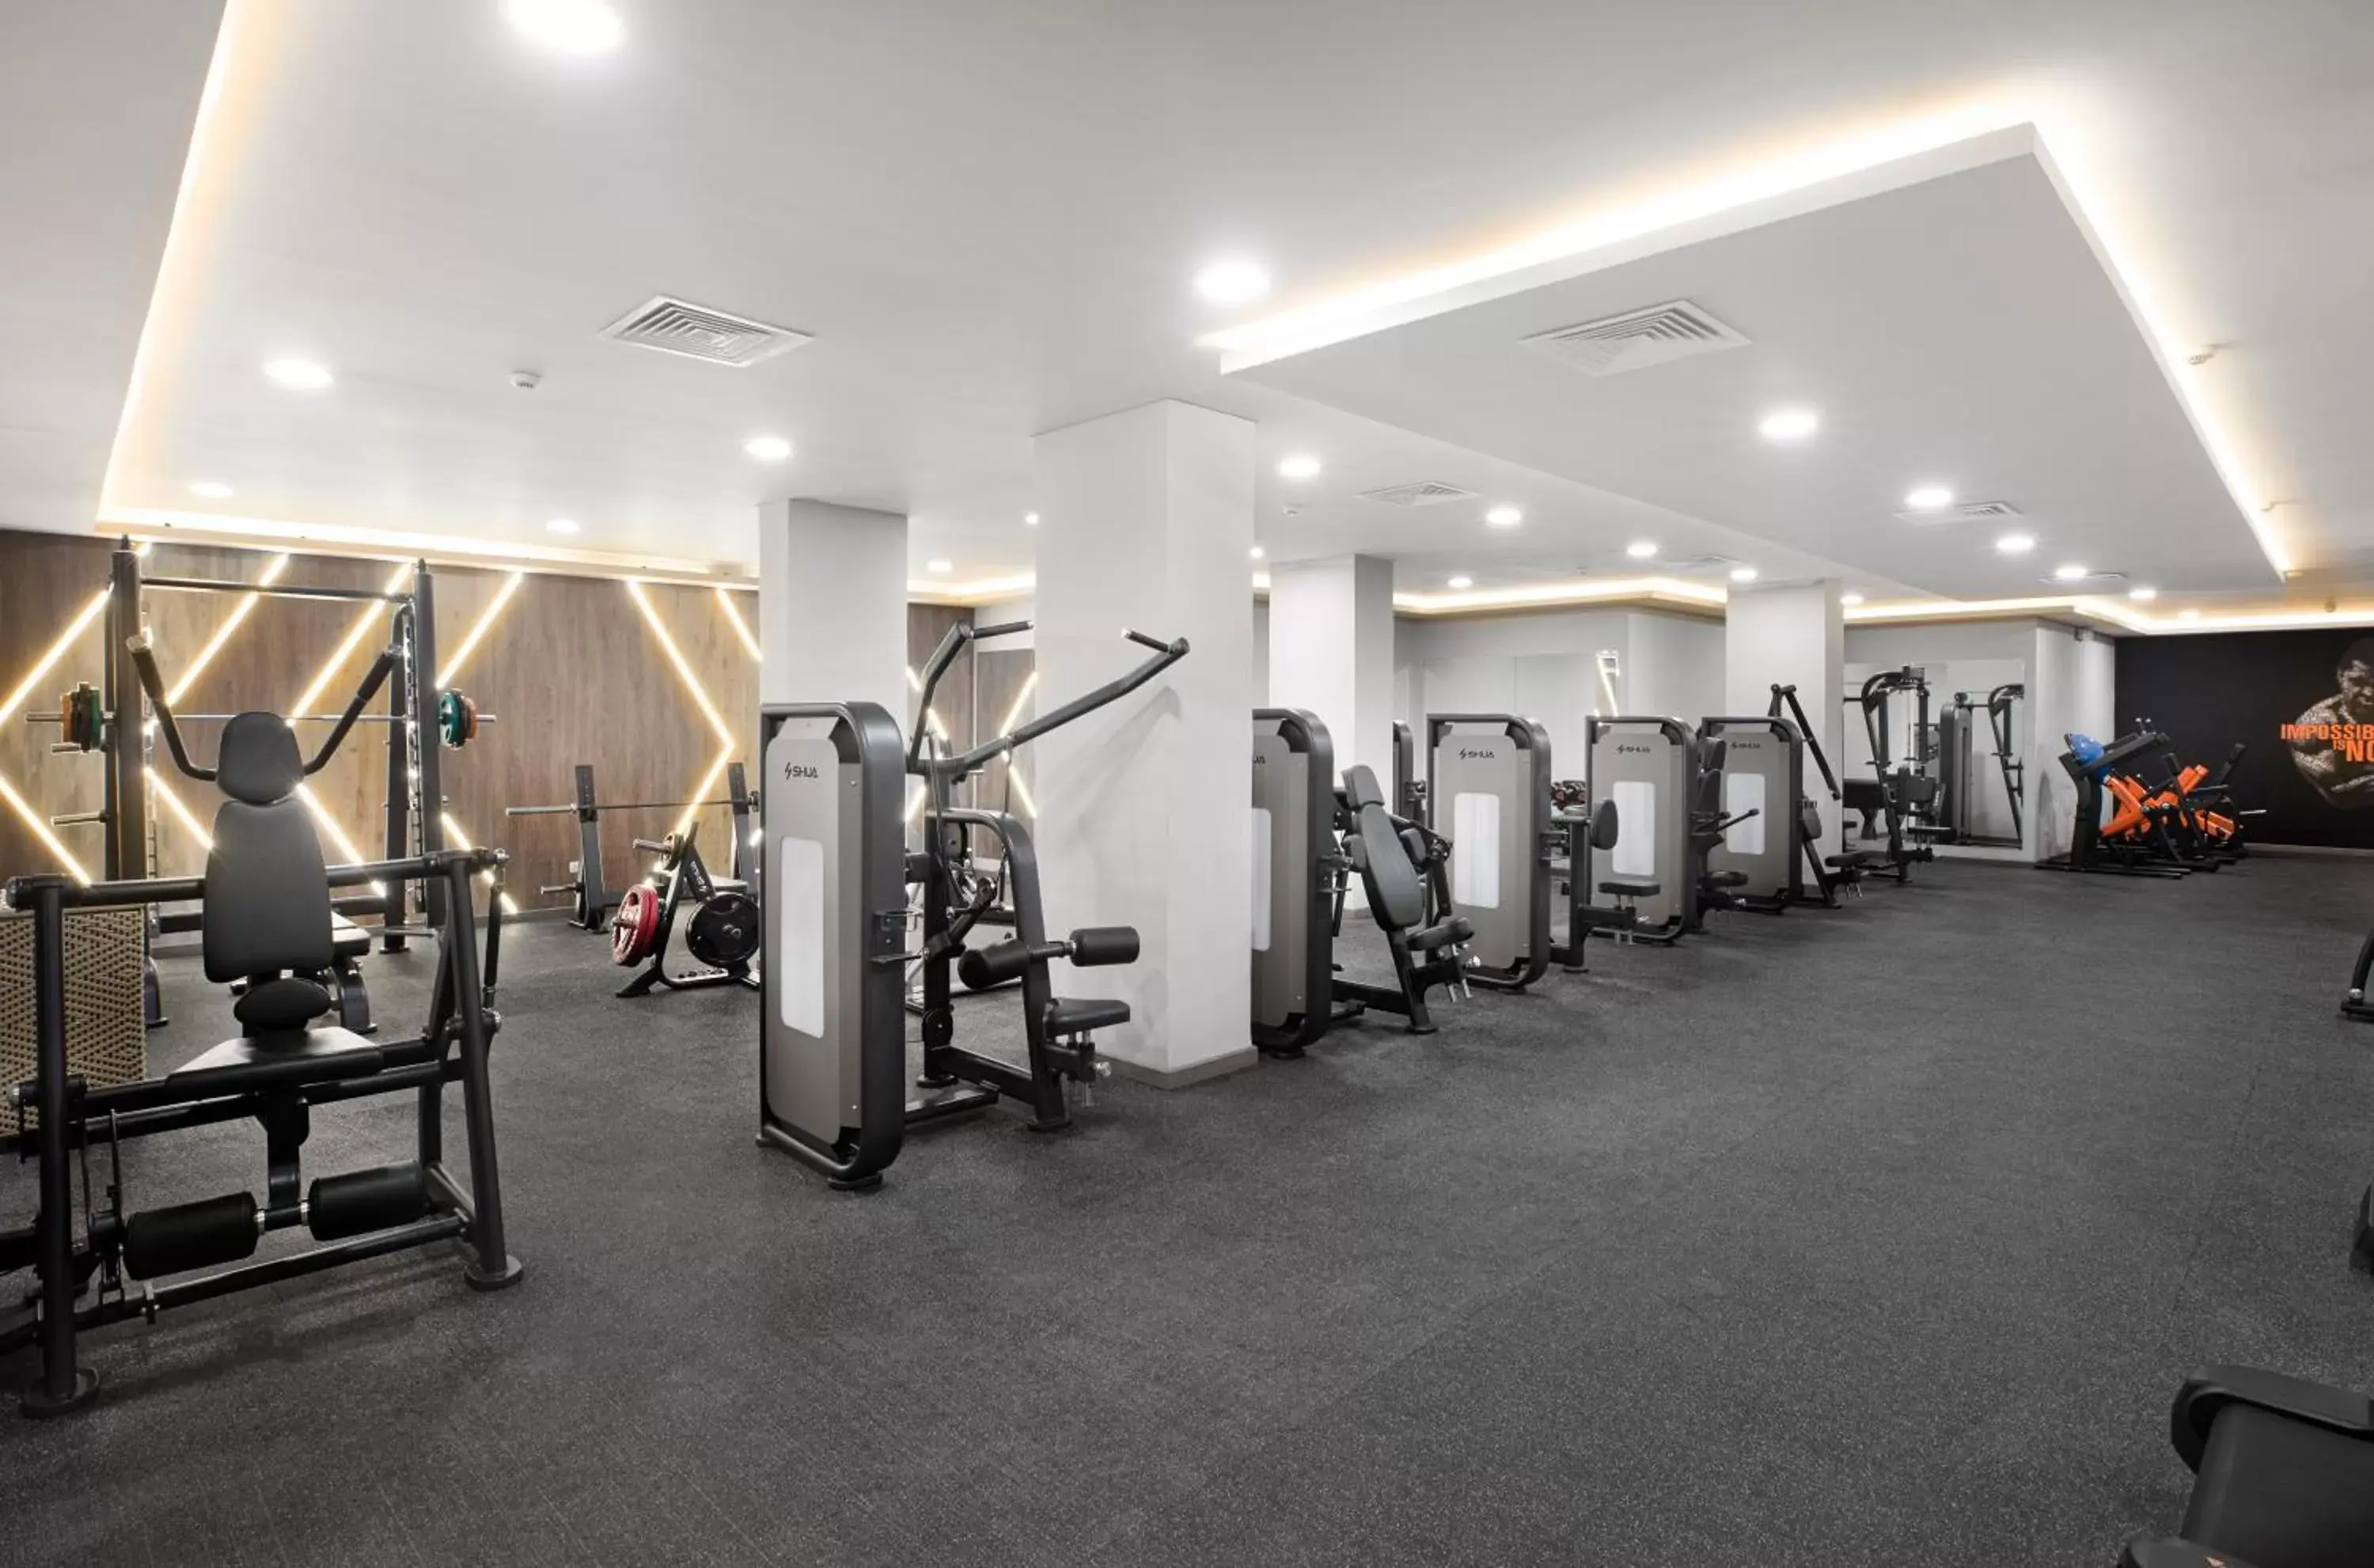 Fitness centre/facilities, Fitness Center/Facilities in Pyramisa Beach Resort Sharm El Sheikh